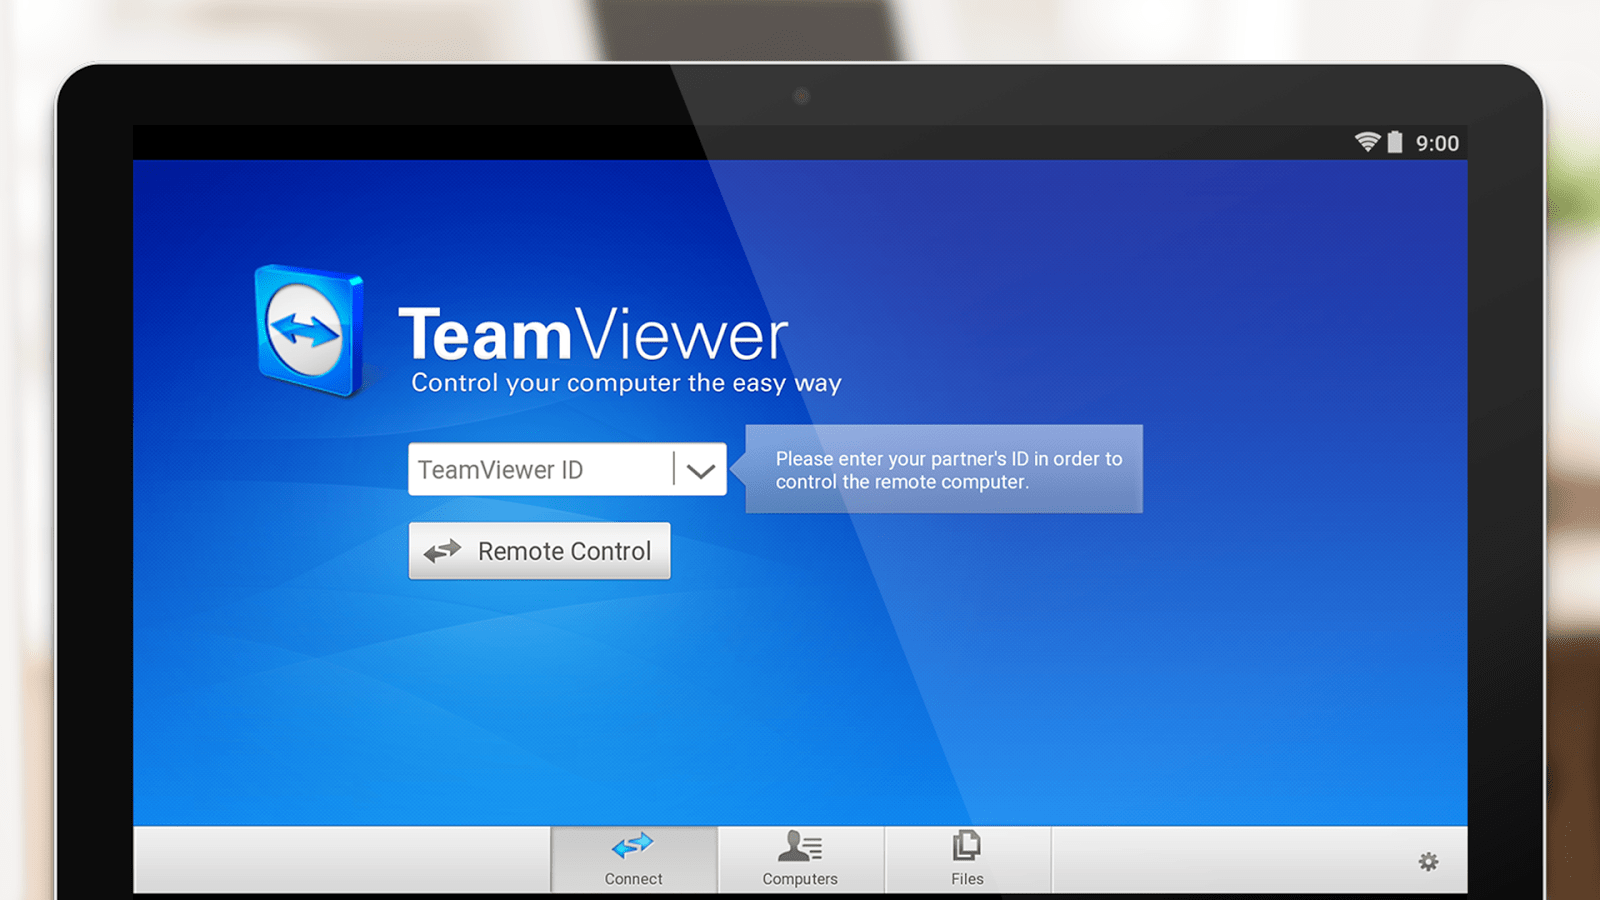 teamviewer.de download